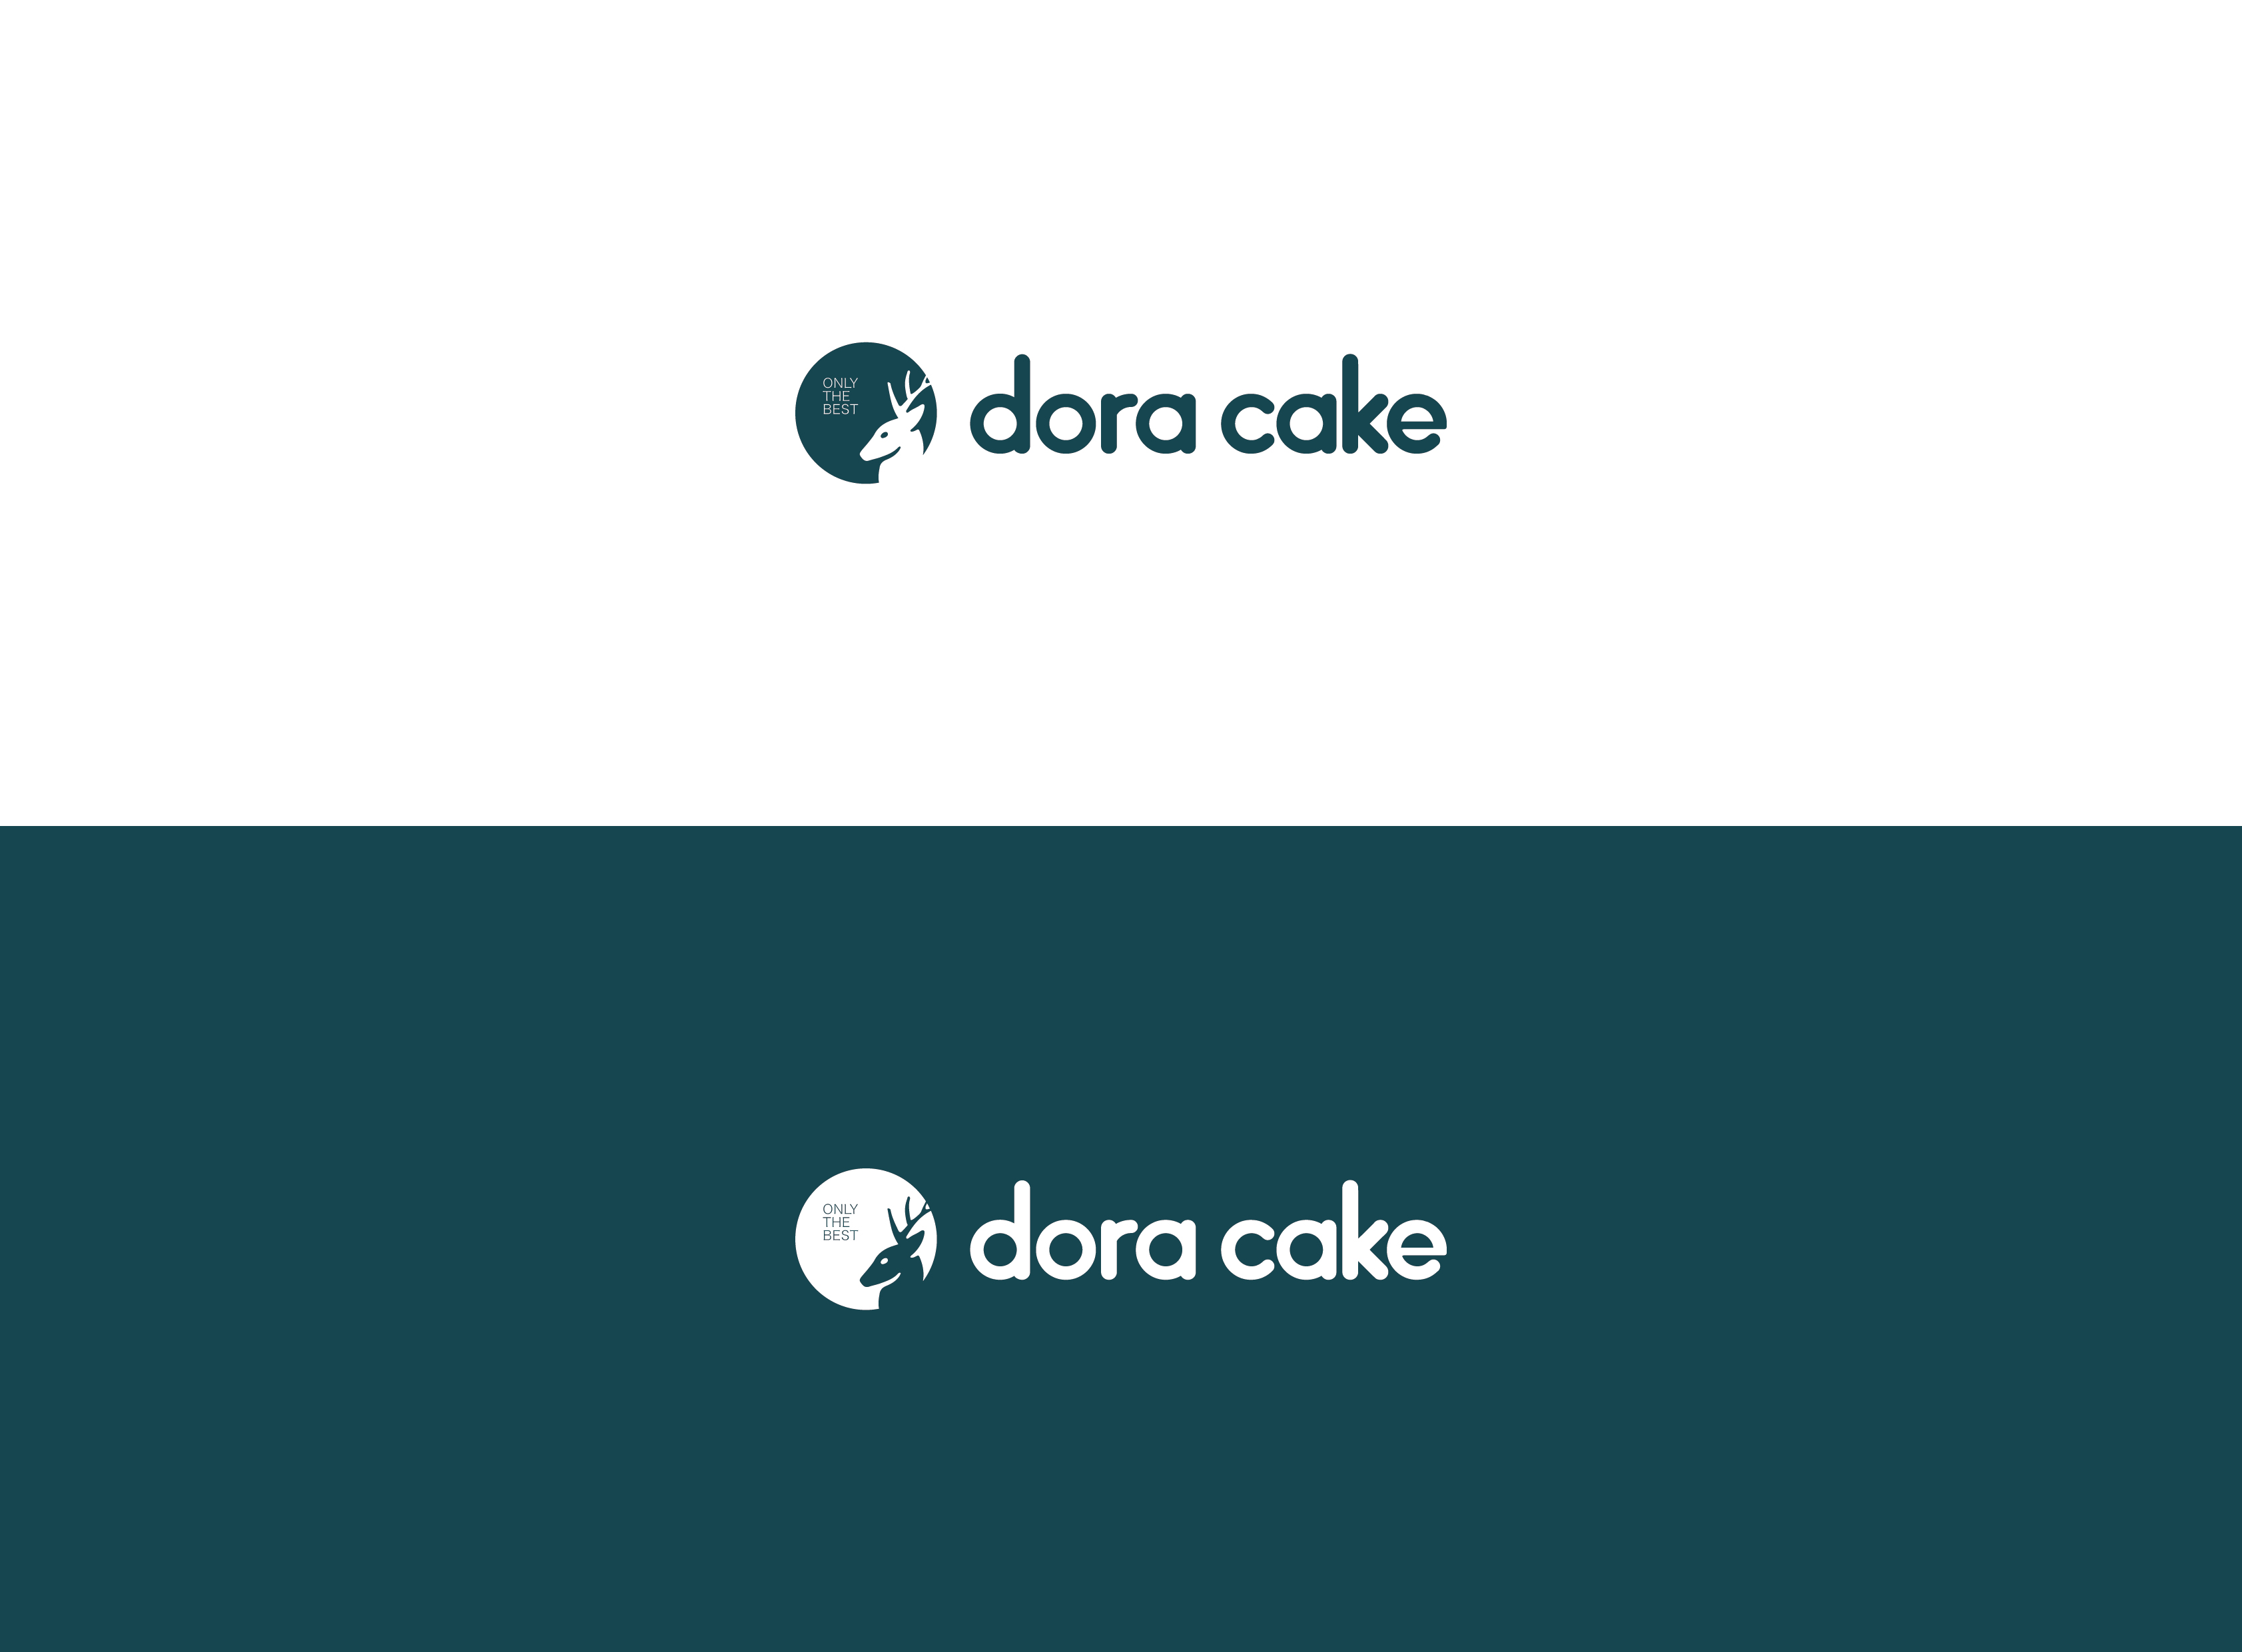 dora cake 品牌logo设计